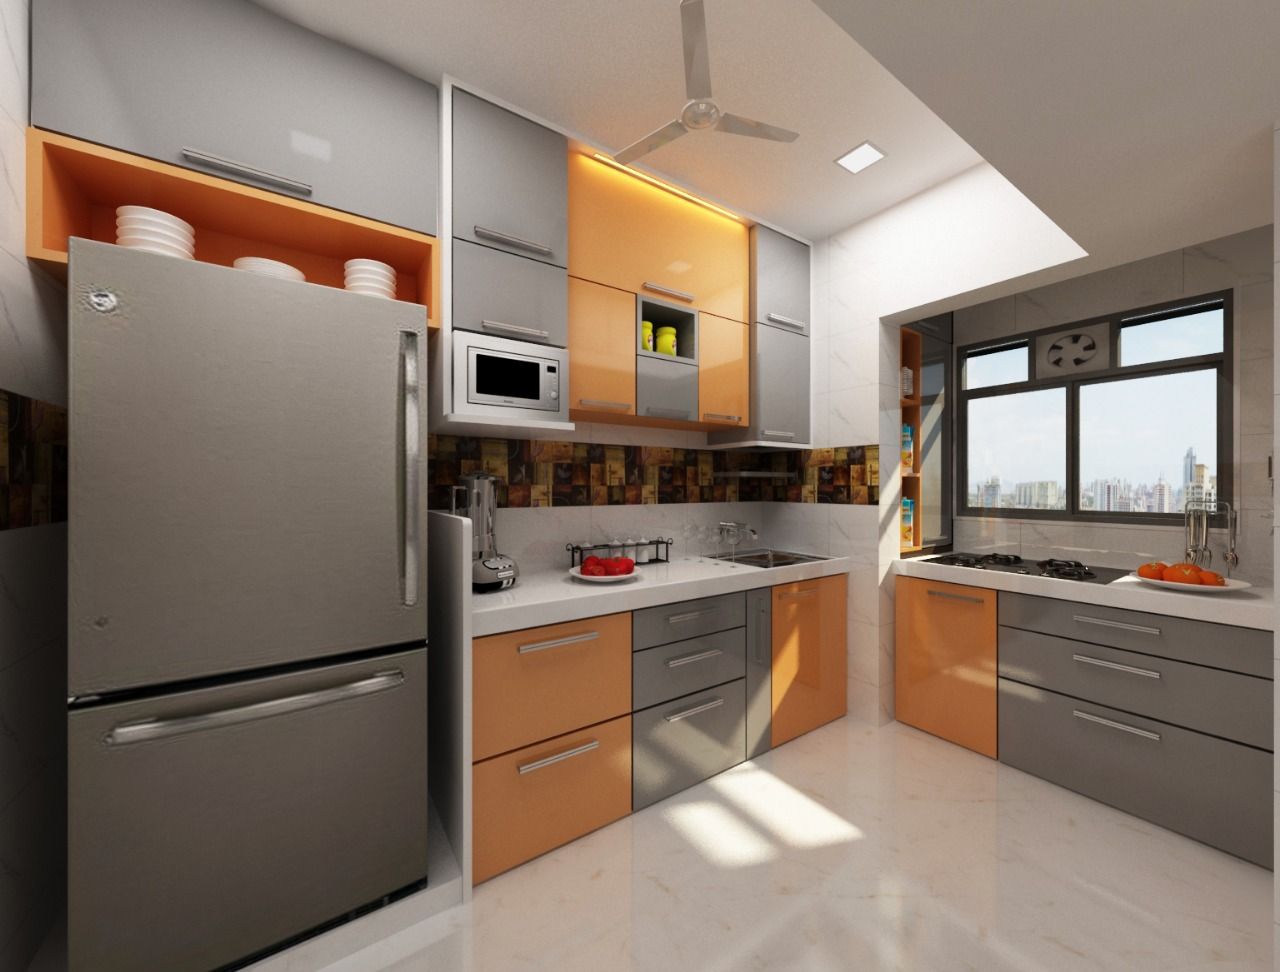 3BHK home design in Ghansoli, Mumbai , Square 4 Design & Build Square 4 Design & Build Cozinhas modernas